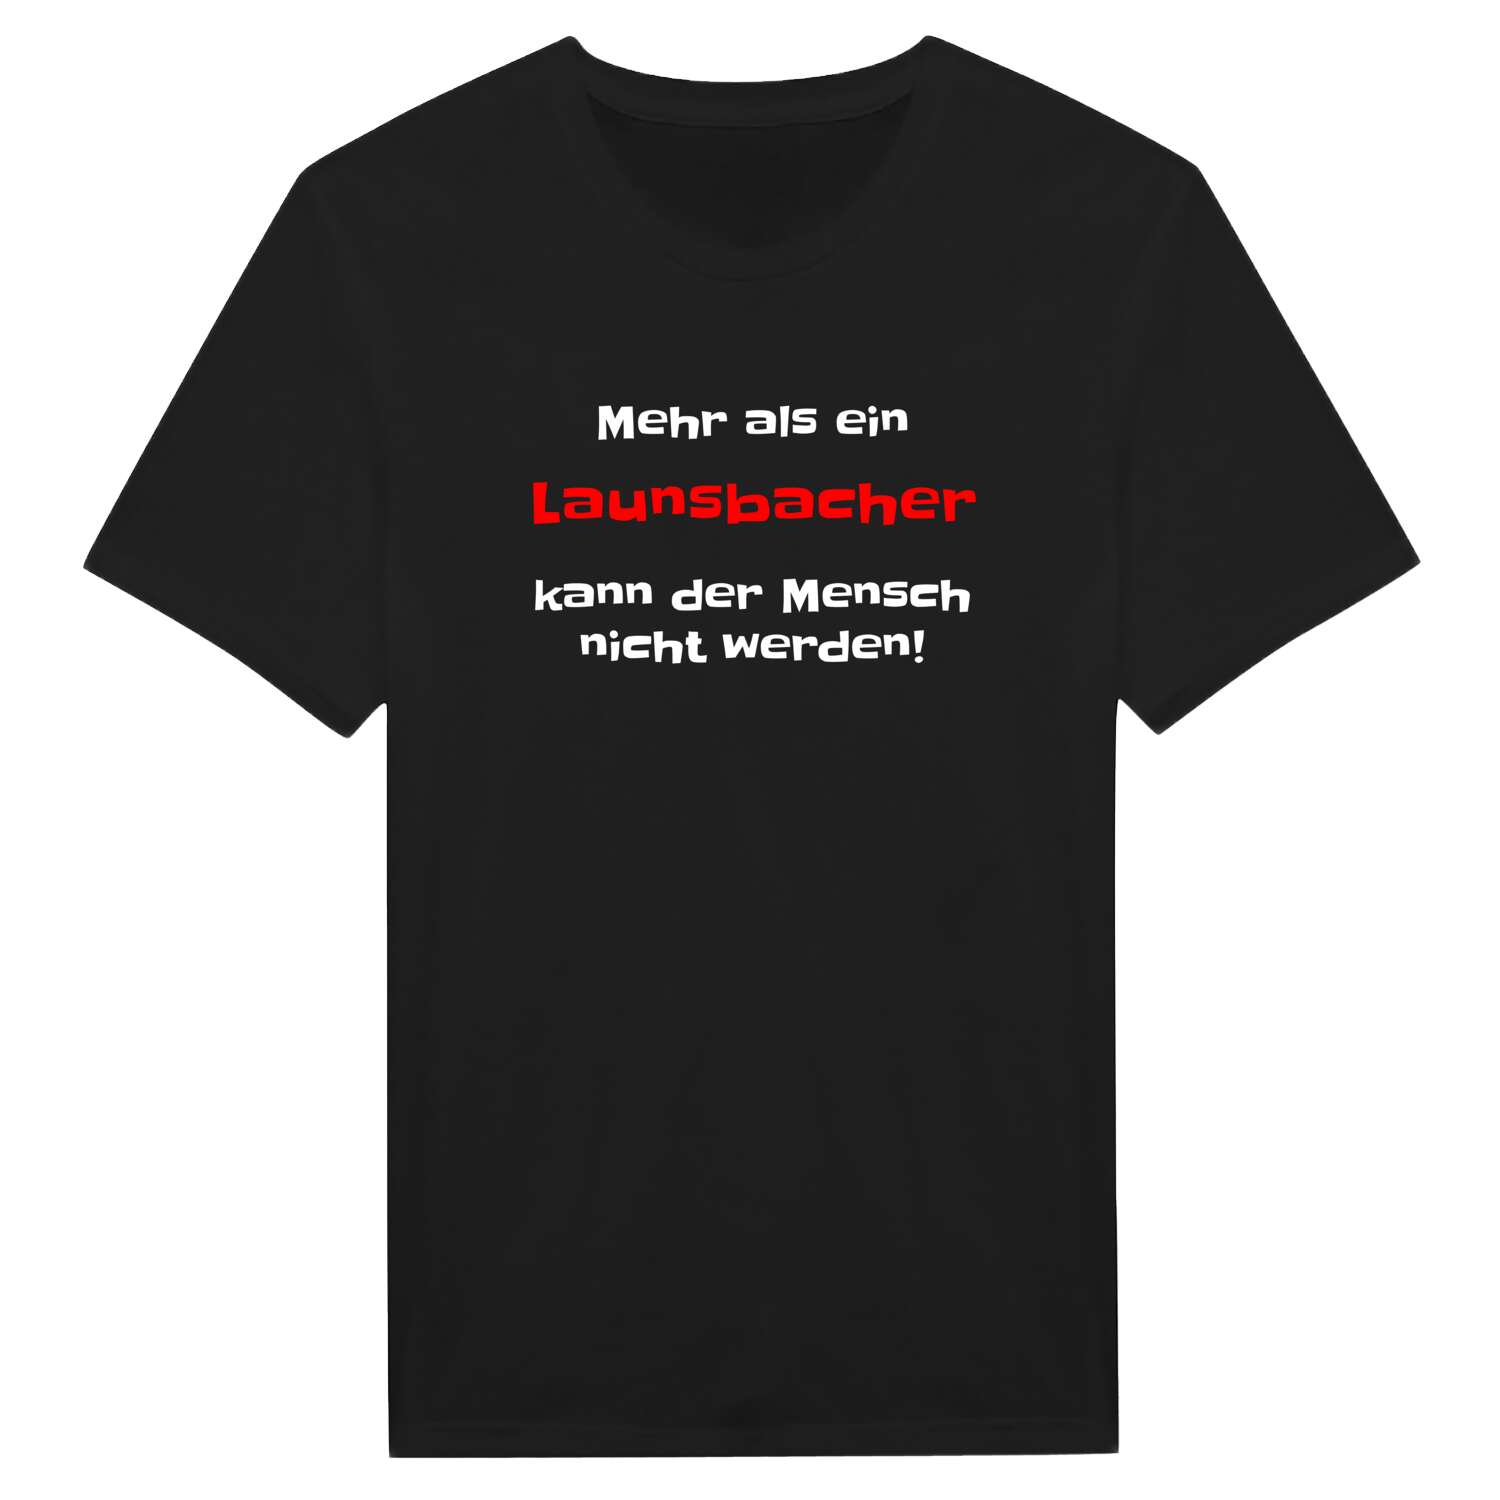 Launsbach T-Shirt »Mehr als ein«